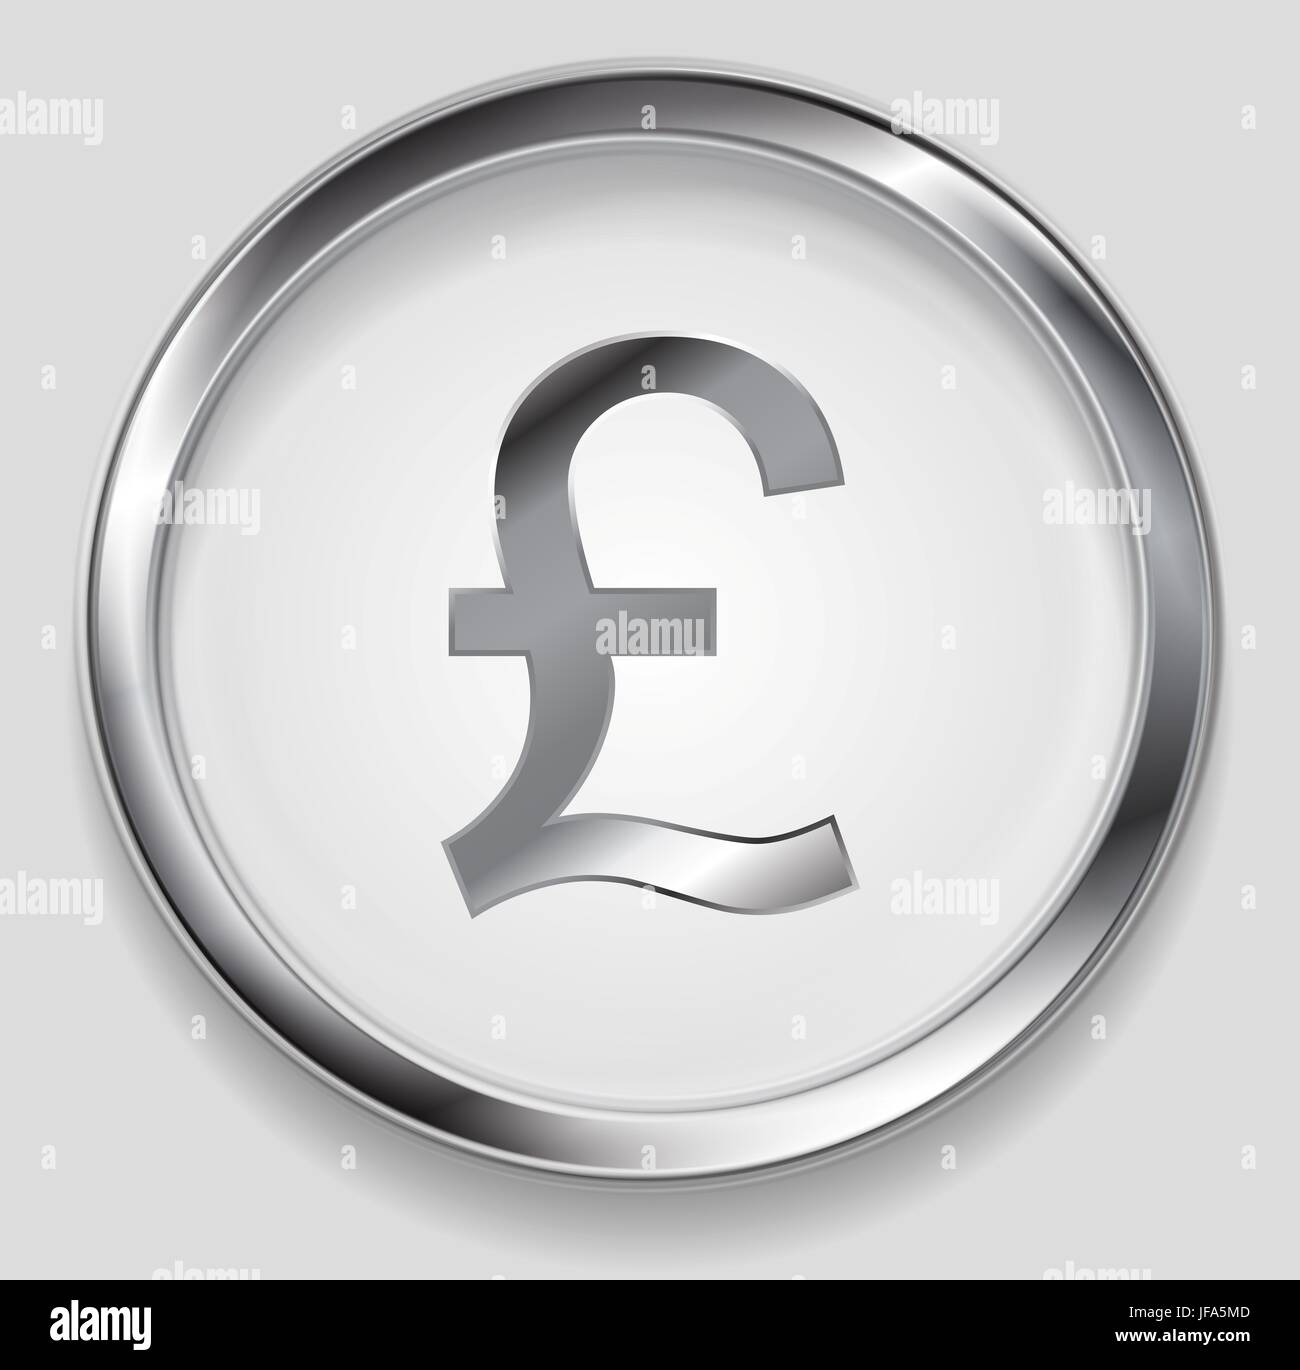 Concept metallic pound symbol logo button Stock Photo